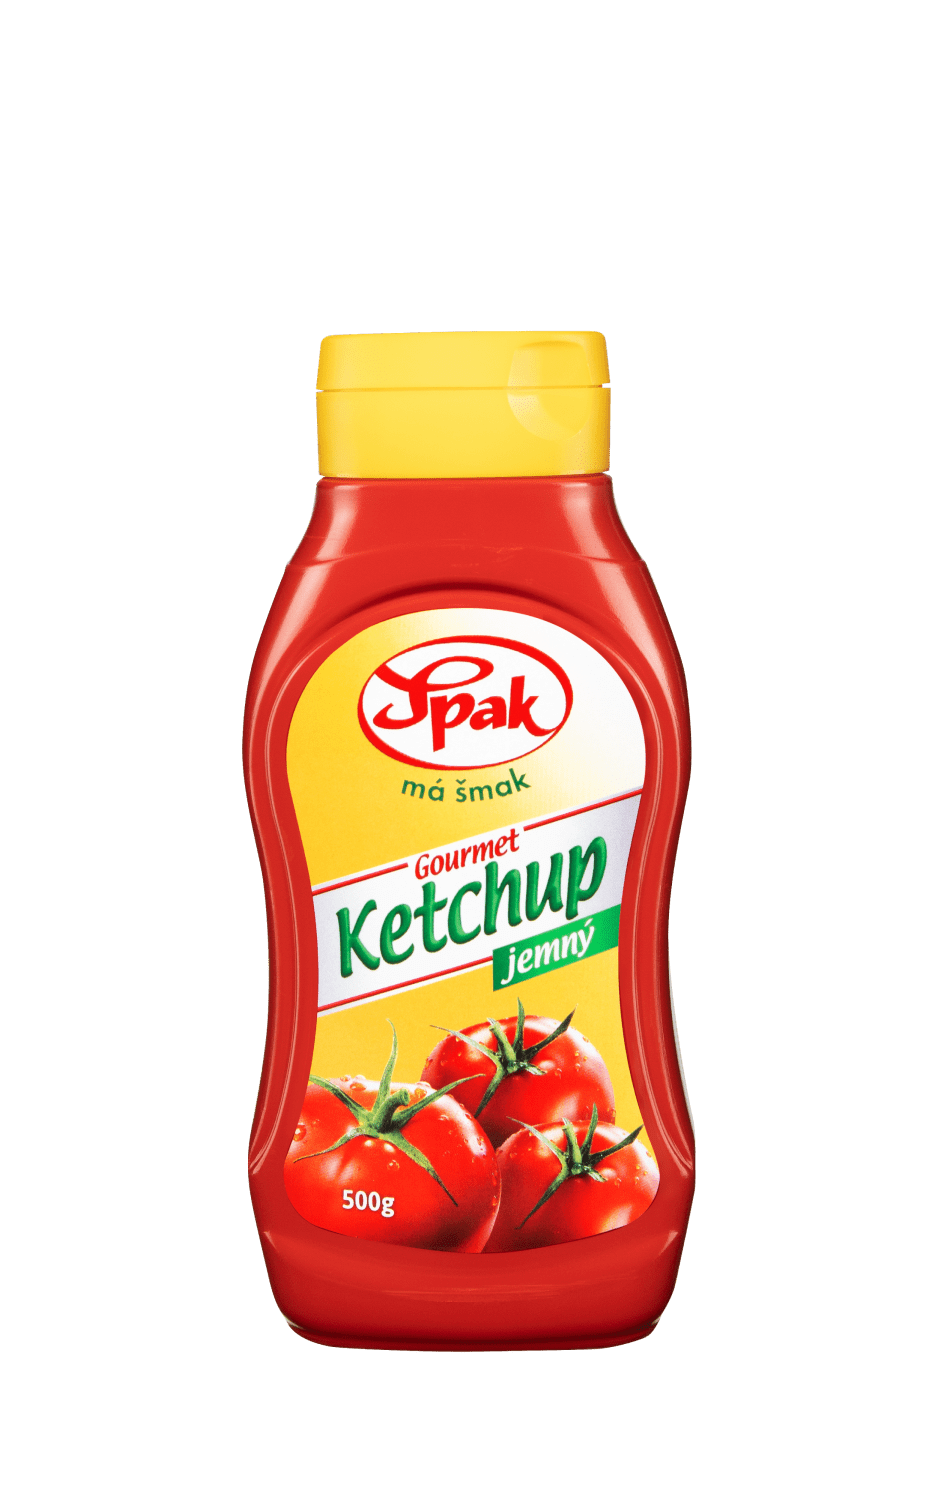 Ketchup-jemny-Gourmet-500-g (1)